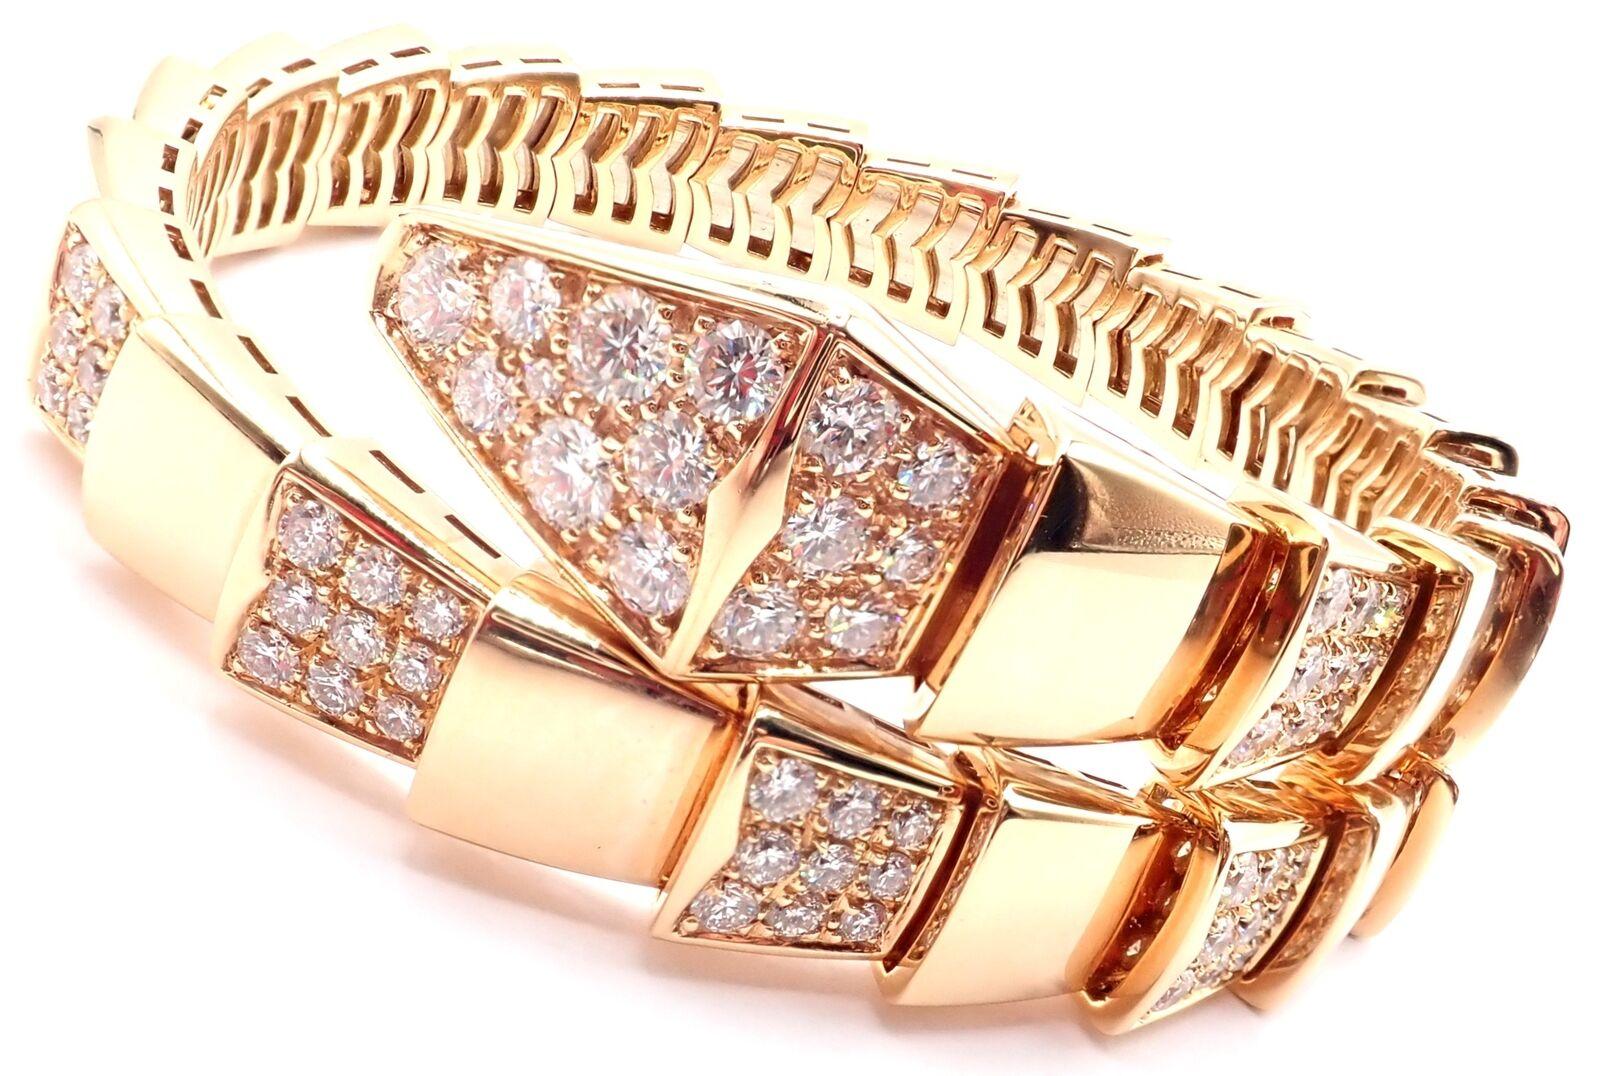 18k Rose Gold Diamant Serpenti Viper Schlange Armreif von Bulgari. 
Mit 127 runden Diamanten im Brillantschliff VVS1 Reinheit, E Farbe Gesamtgewicht ca. 7ct.
Einzelheiten:
Größe: Größe Medium, 17cm, 6.7